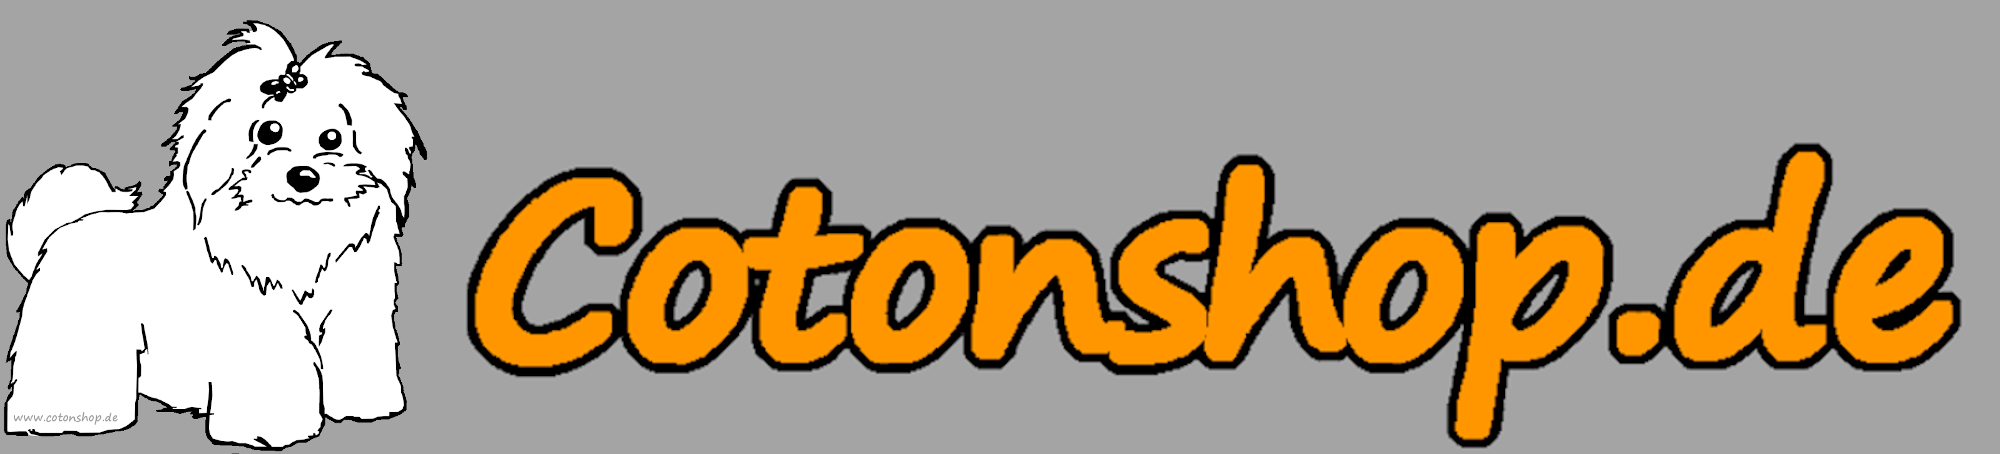 Cotonshop.de-Logo